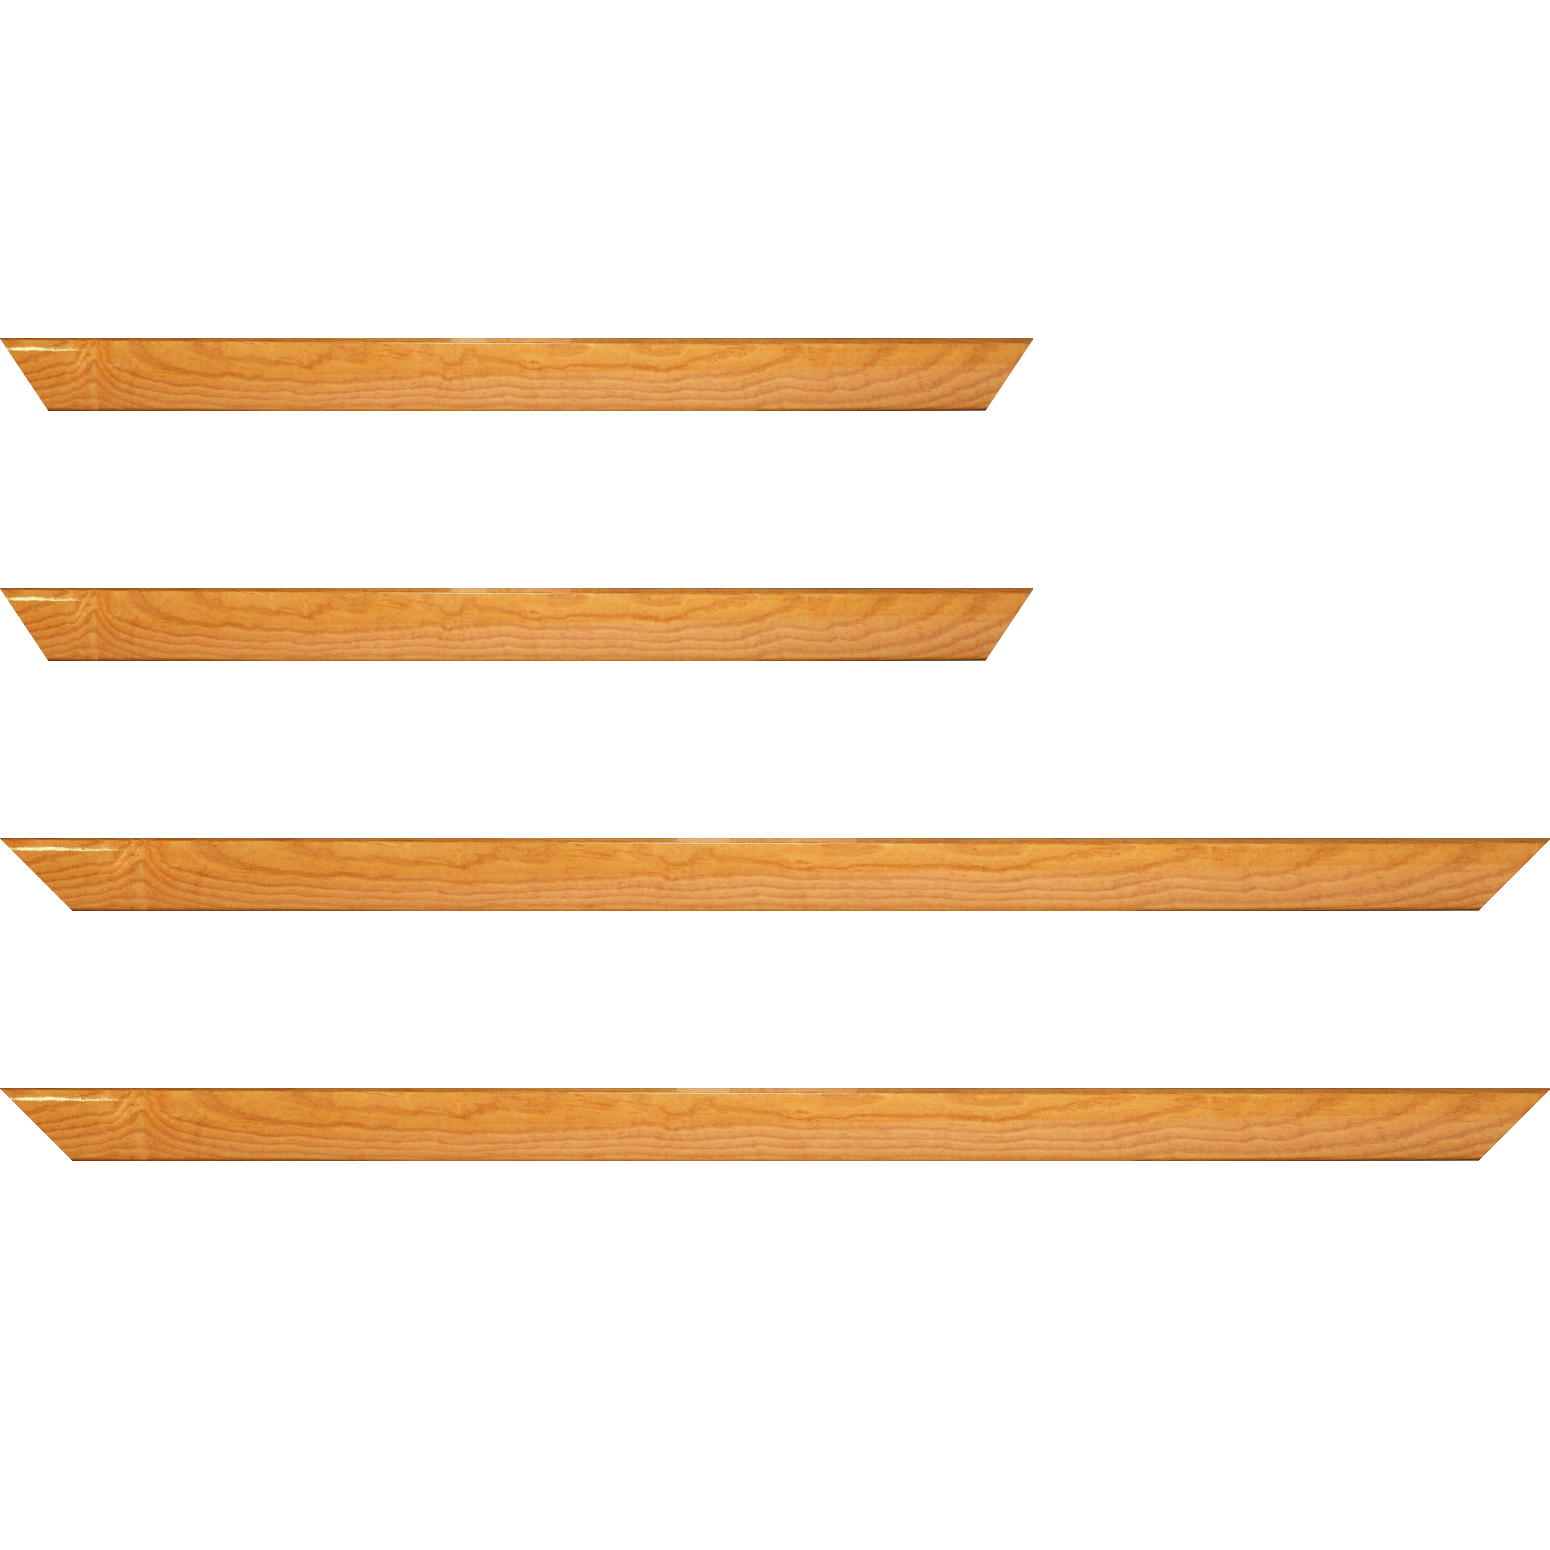 Baguette bois profil arrondi en pente plongeant largeur 2.4cm couleur jaune moutarde finition vernis brillant,veine du bois  apparent (pin) , - 92x60